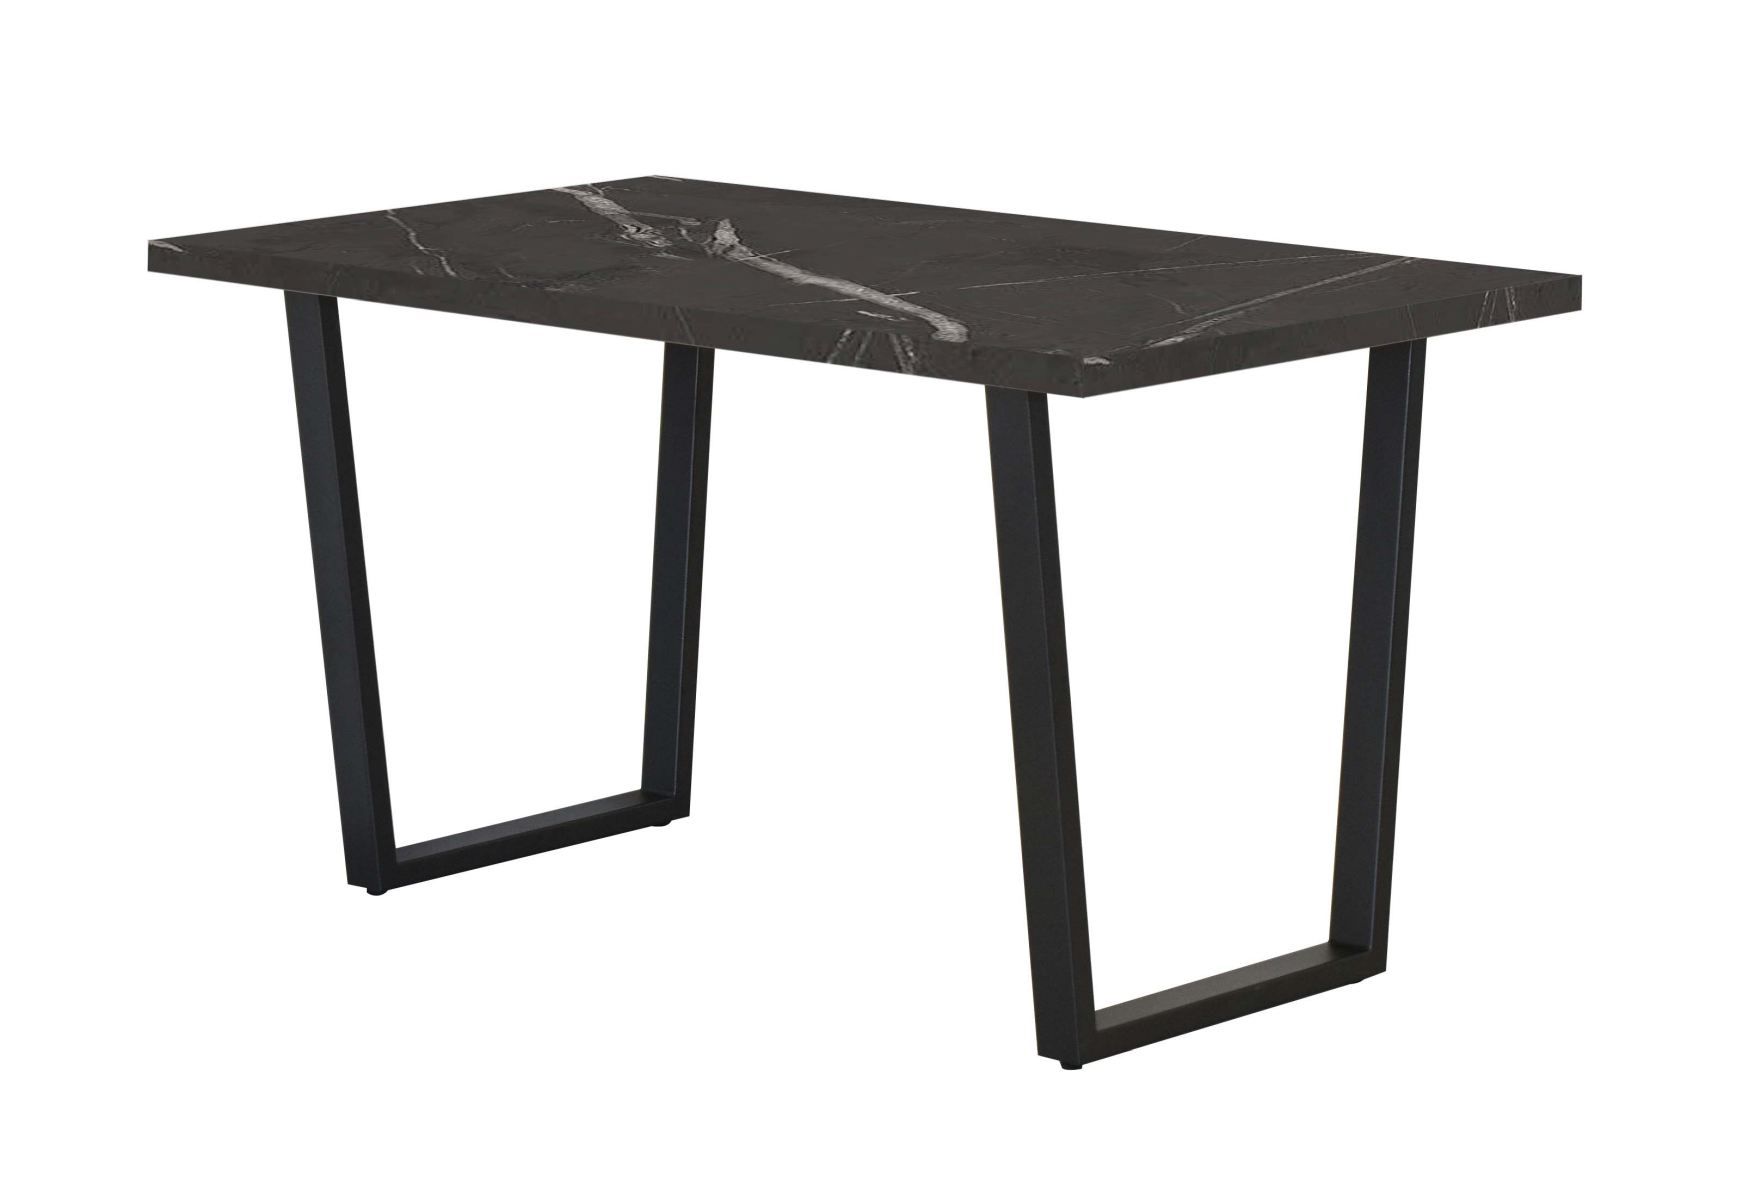 Table de salle à manger Ourense 04, Couleur : Marbre noir / Noir - dimensions : 160 x 90 cm (l x p)